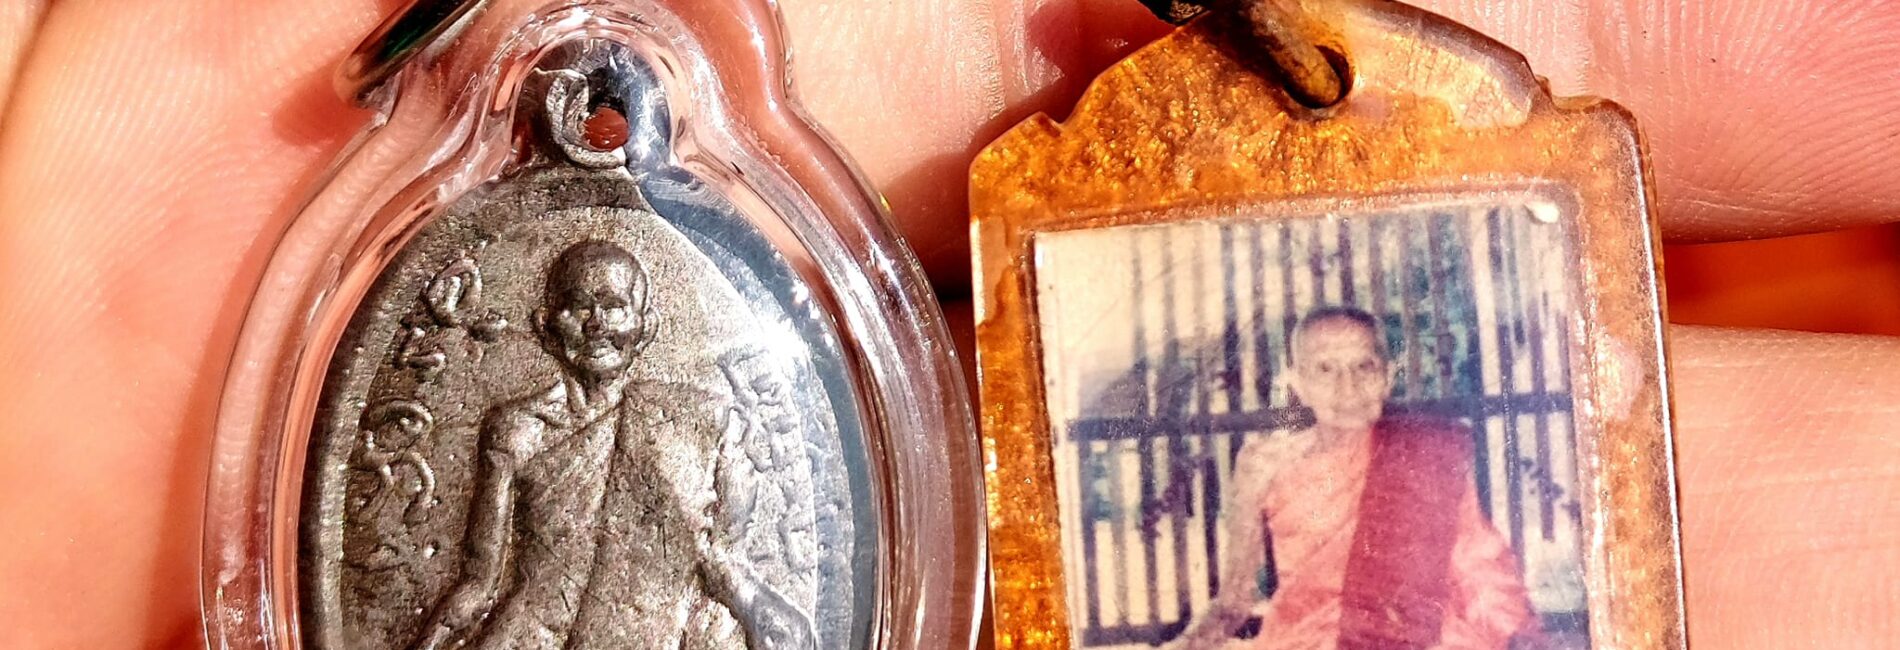 รูปถ่ายหลวงปู่บุญมี แจกผู้มาทำบุญบนศาลา 
 ในวันสงกรานต์